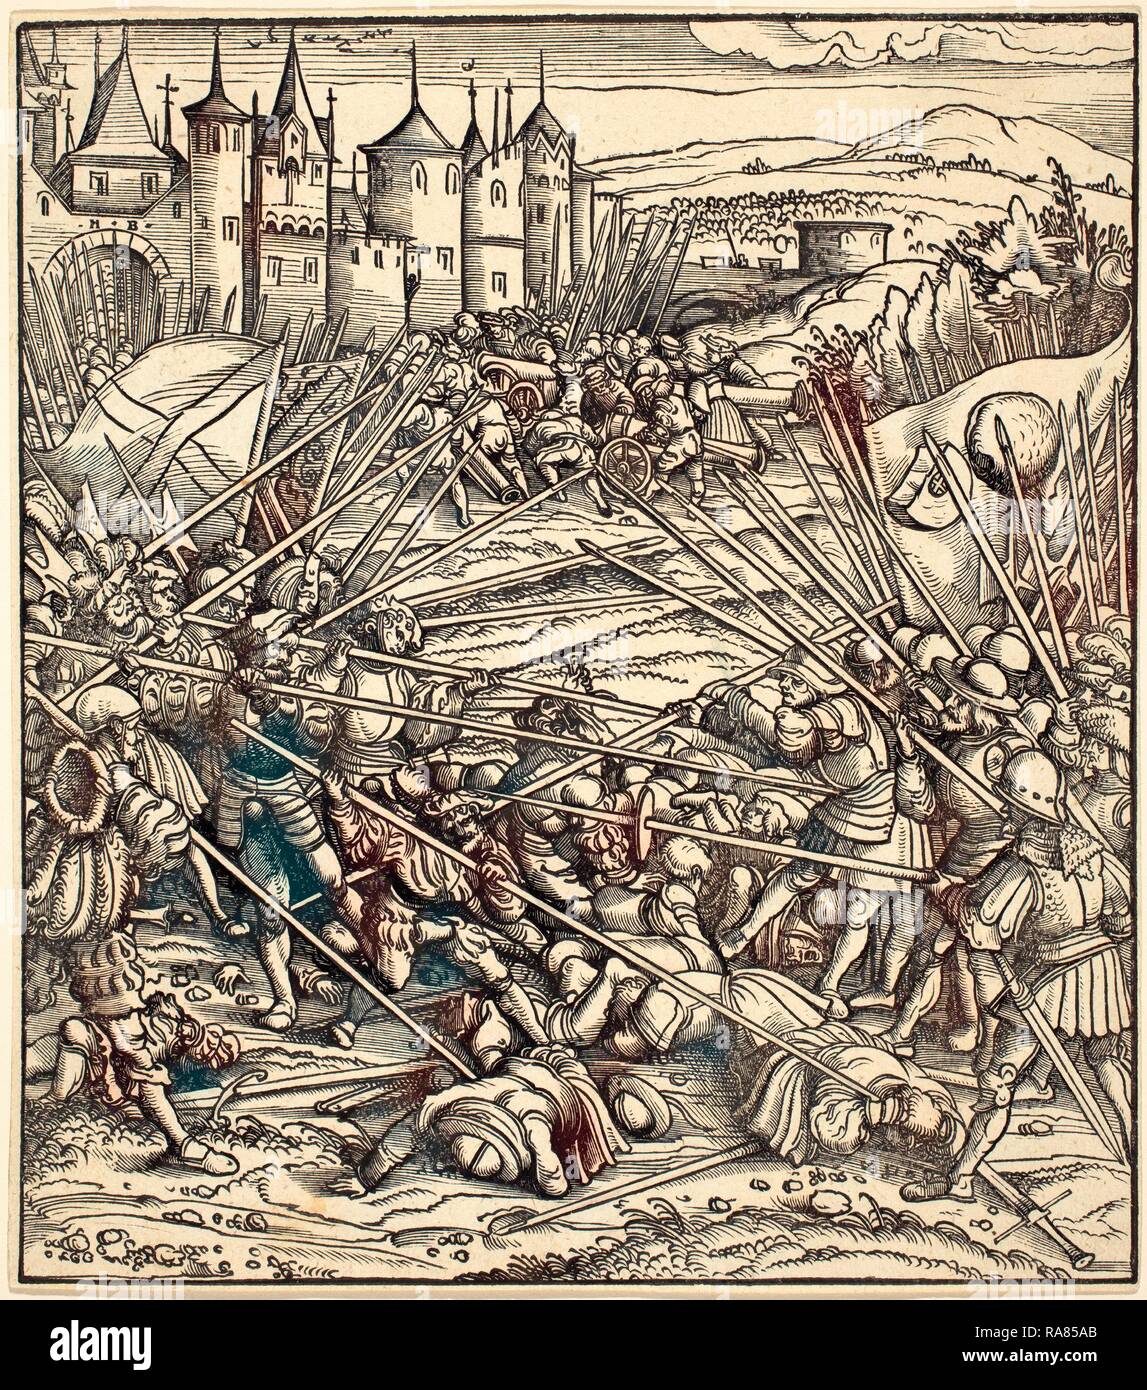 Hans Burgkmair I (Allemand, 1473 - 1531), bataille de la soldats de pied de lances, gravure sur bois. Repensé Banque D'Images